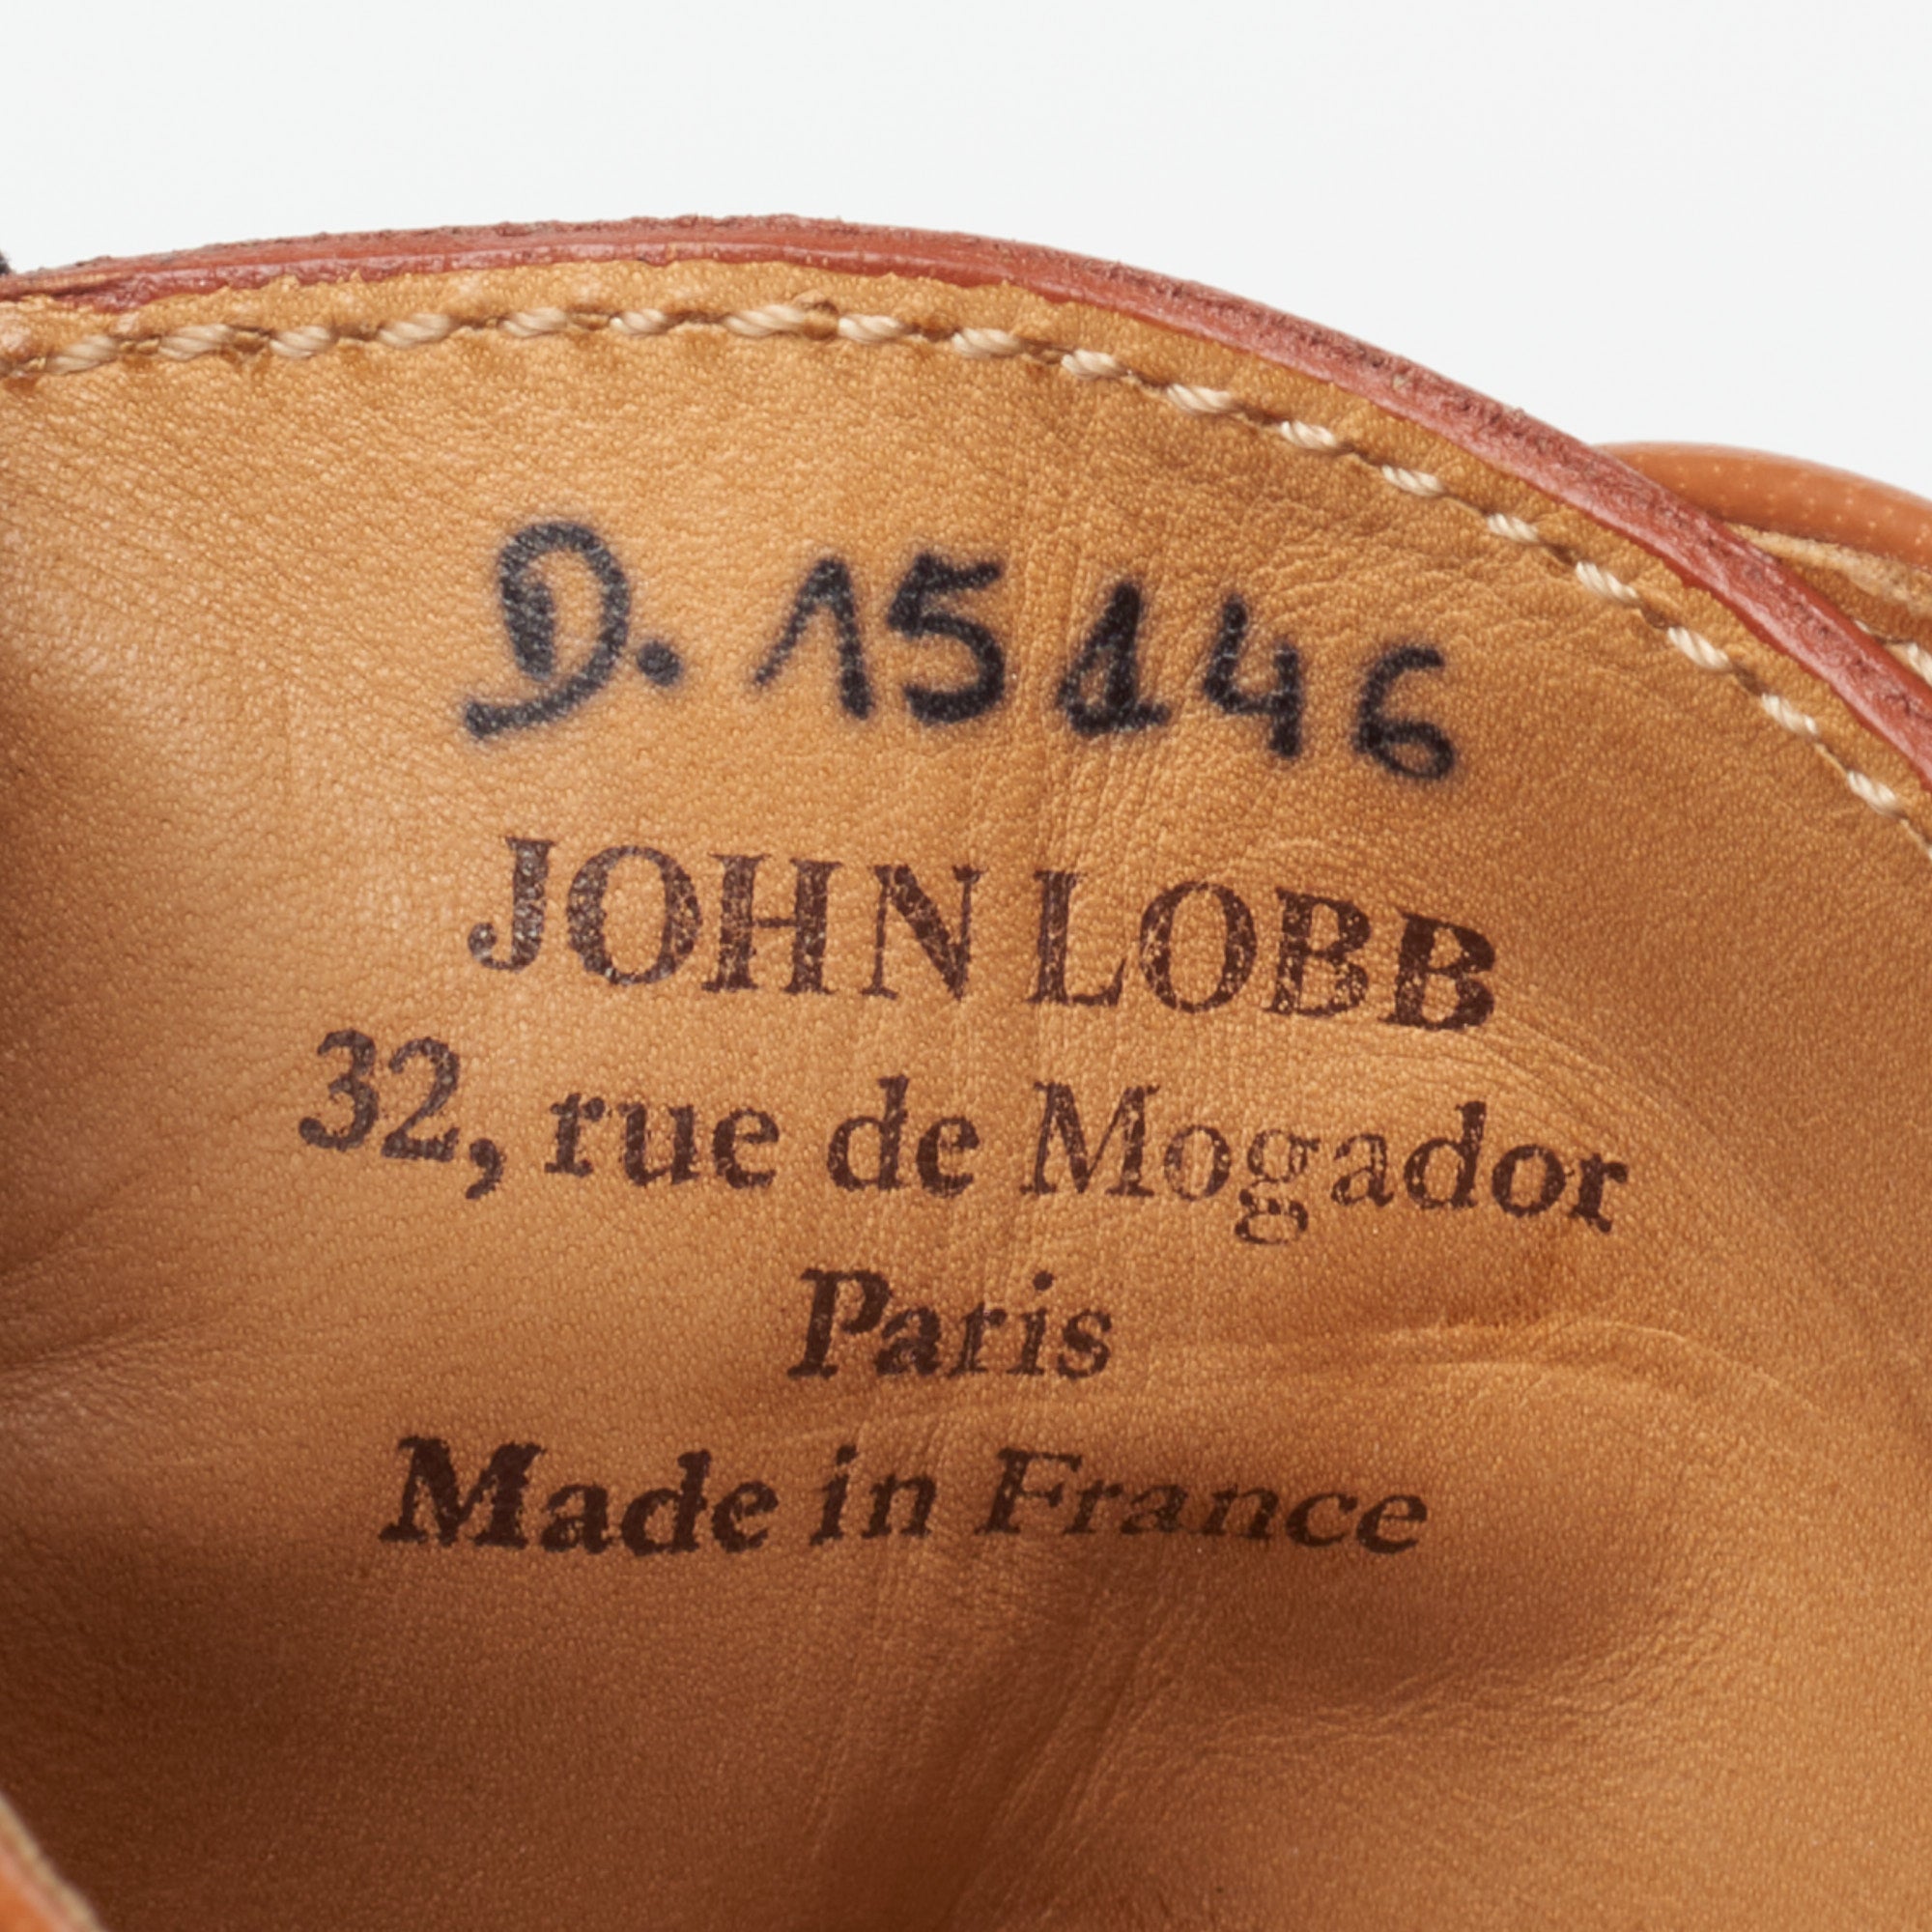 JOHN LOBB Paris City II Bespoke Tan Museum Calf Leather Oxford Shoes UK 7.5 US 8.5 JOHN LOBB